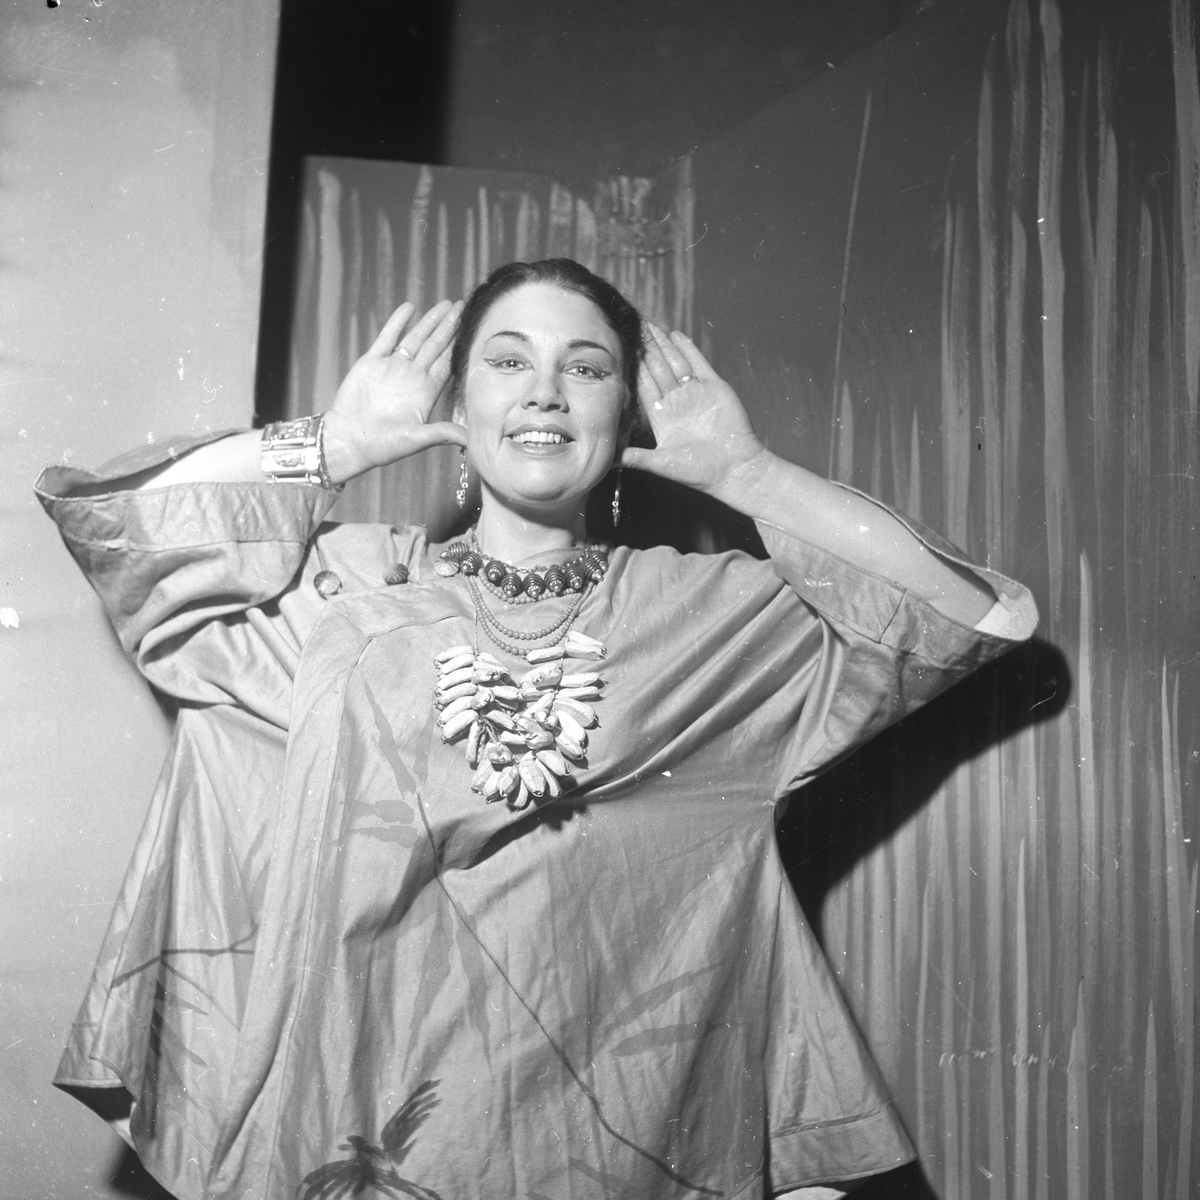 Fra oppsetning av musikalen "South Pacific" på Centralteatret med bla. Ingerid Vardund og Carsten Byhring. Fotografert 02.03.1954.